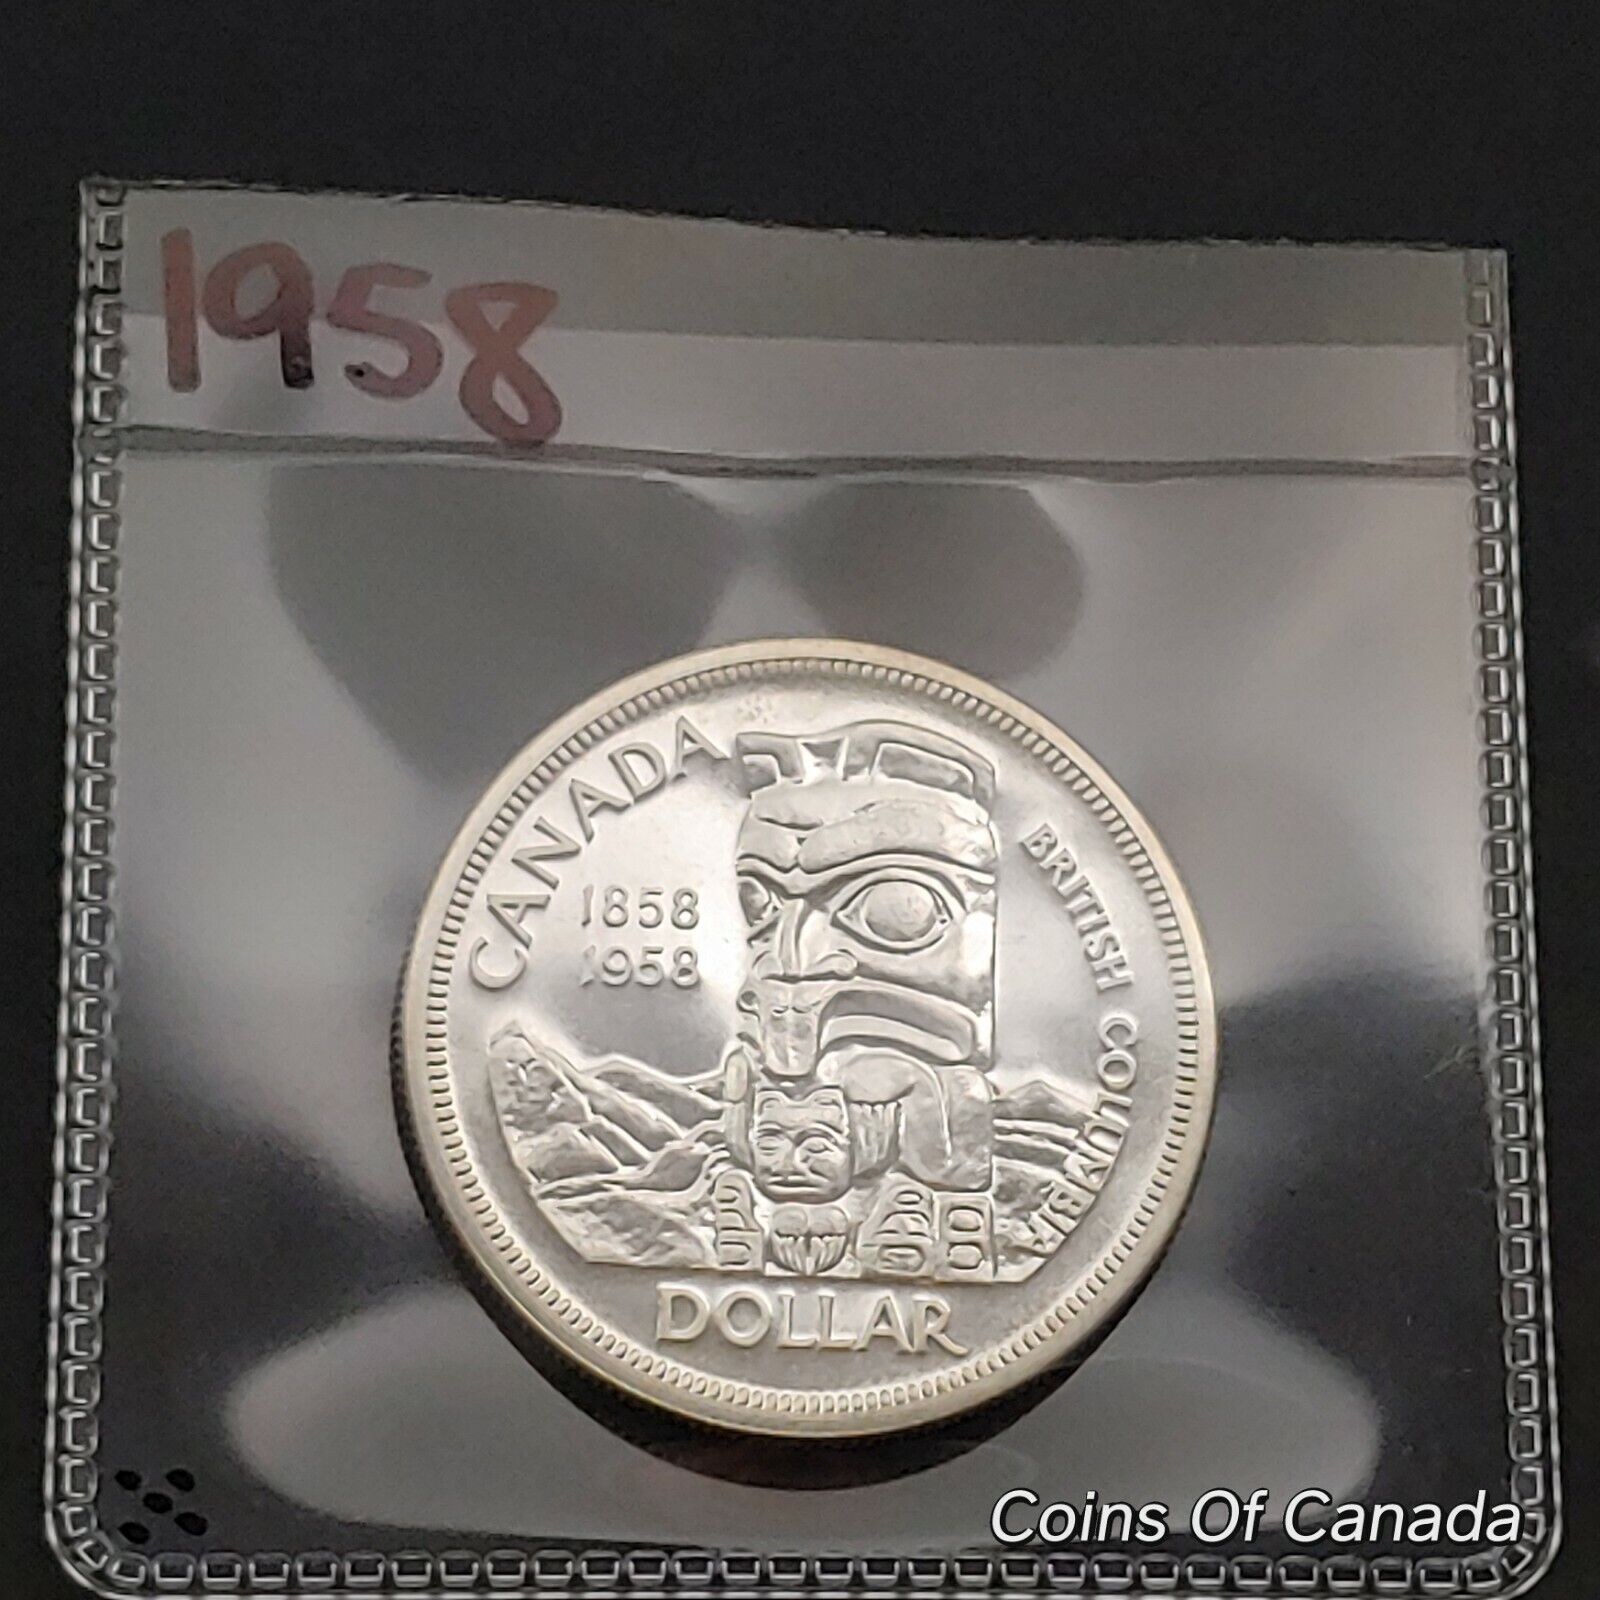 1958 Canada $1 Silver Dollar UNCIRCULATED Coin - Stunning Coin #coinsofcanada